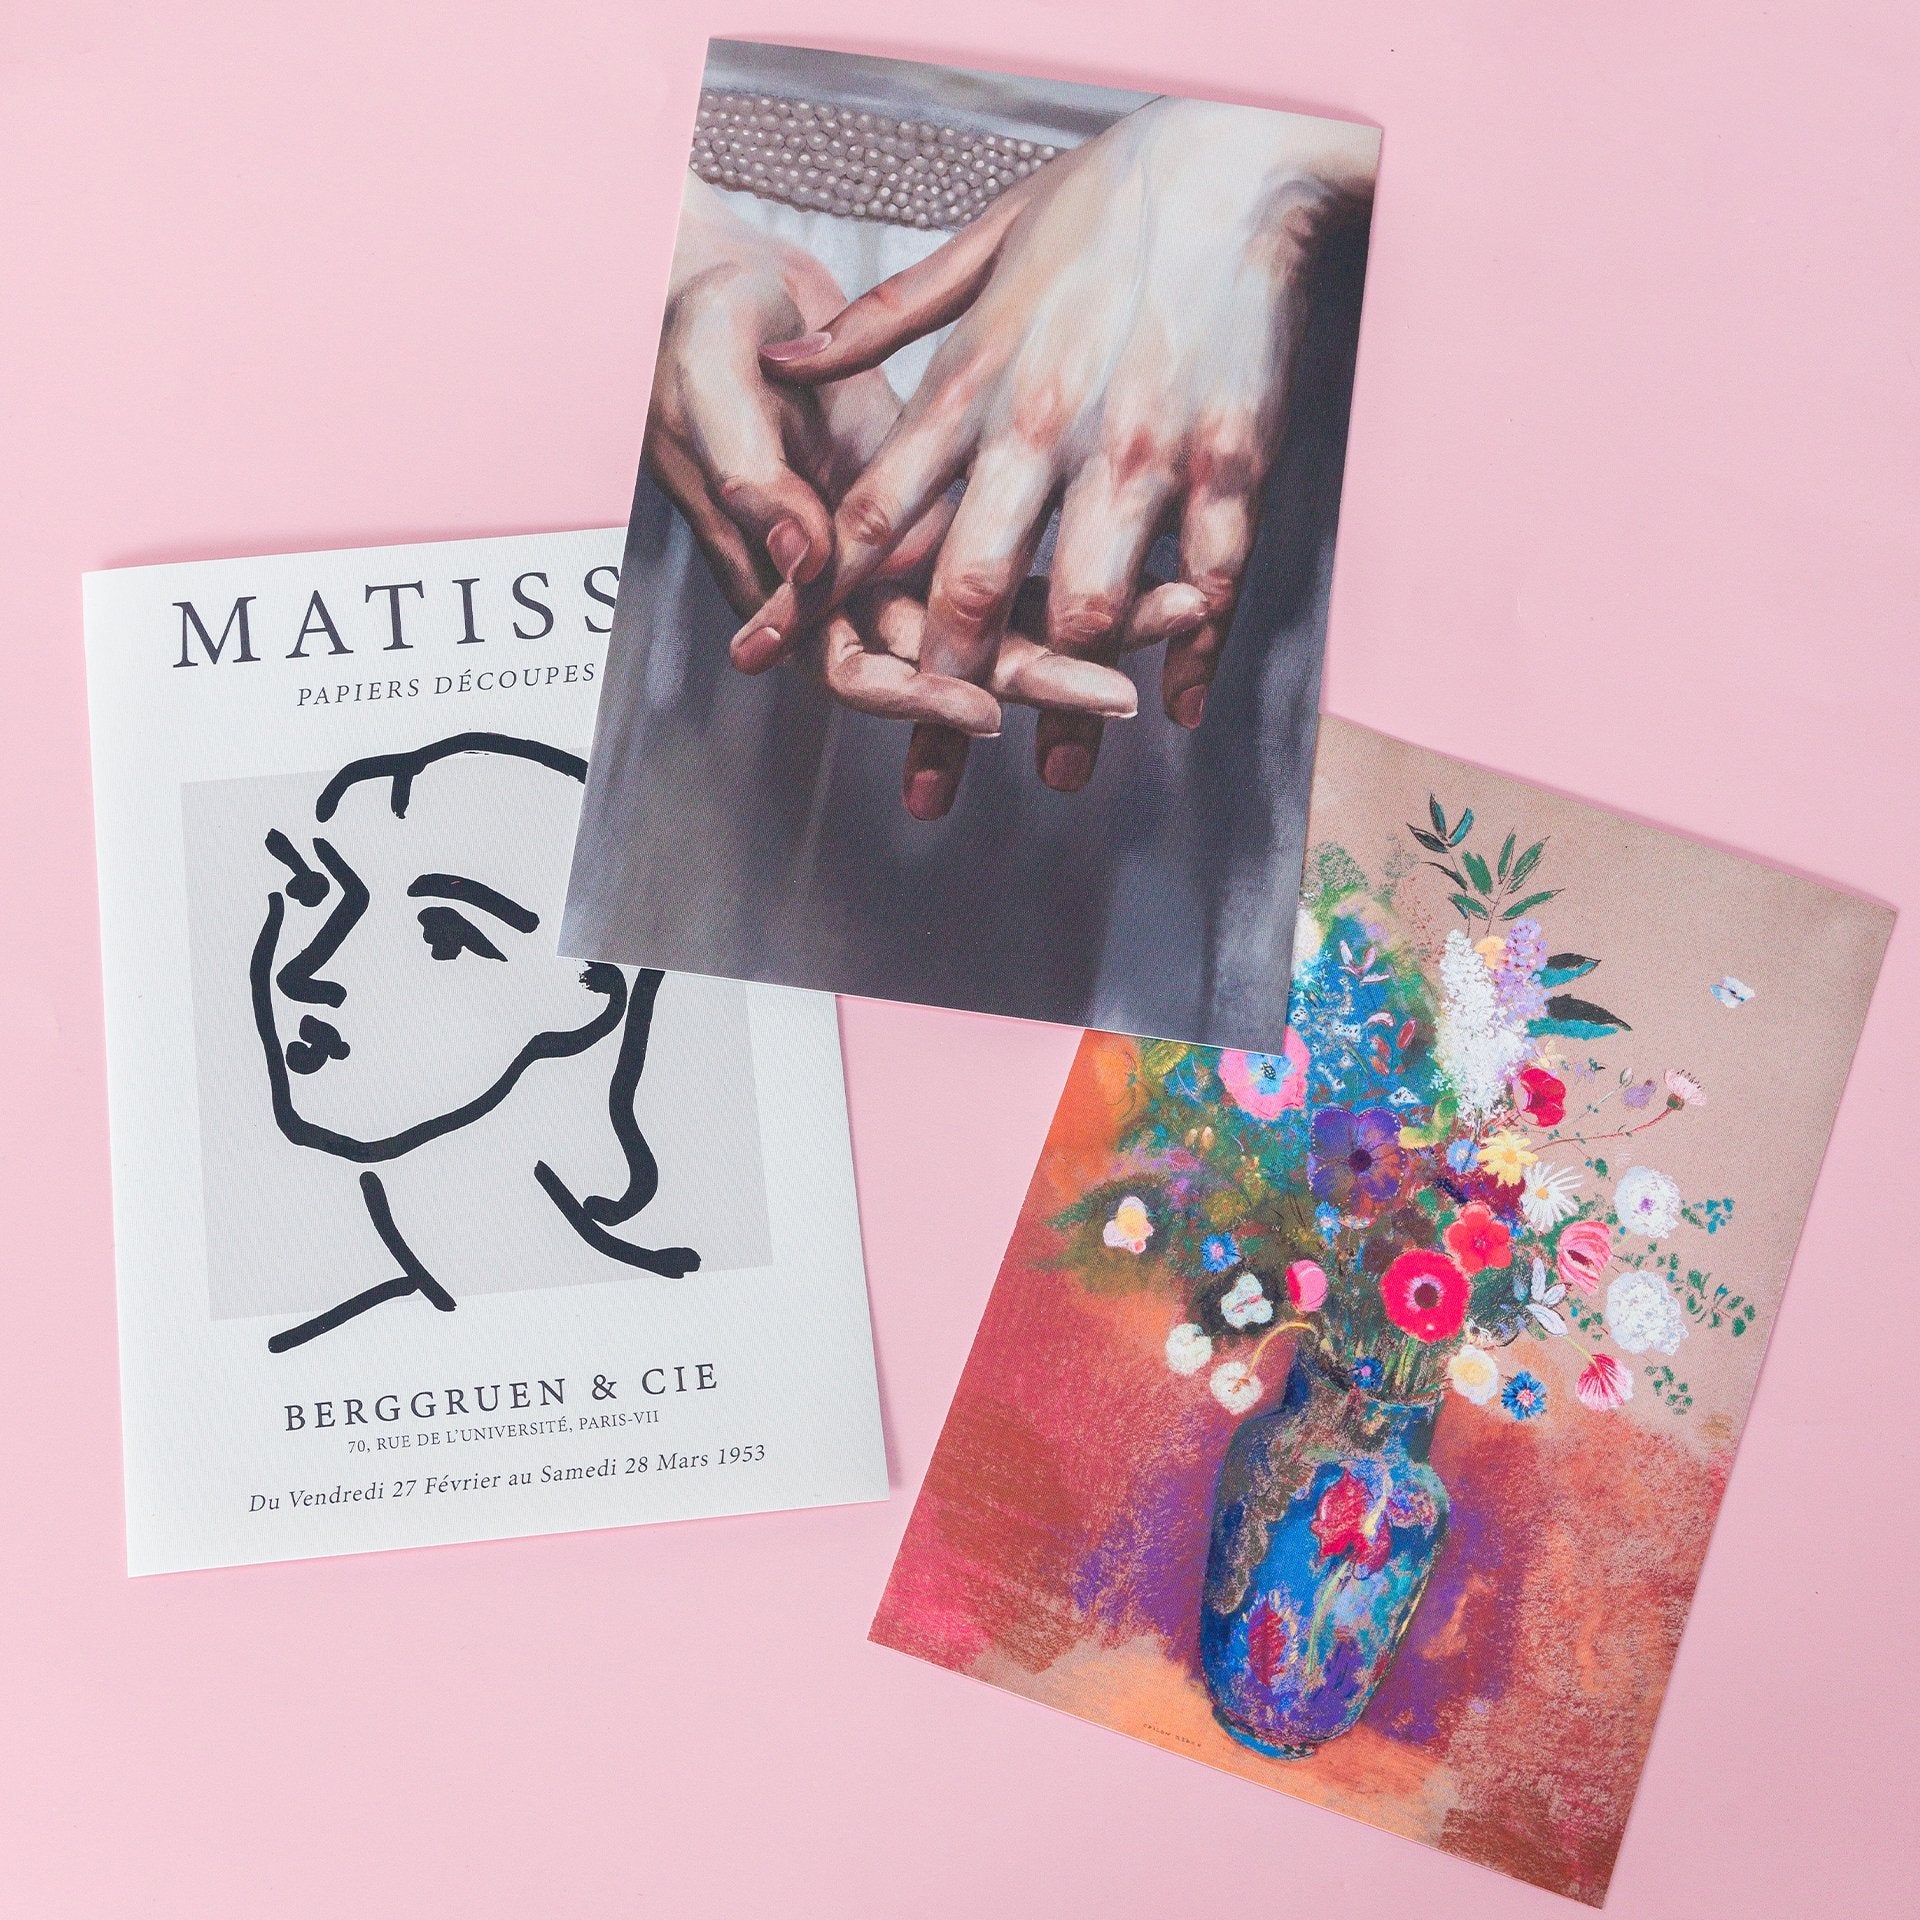 Set de 3 pósters adhesivos reposicionables: Estilo Matisse 02 - Tienda Pasquín